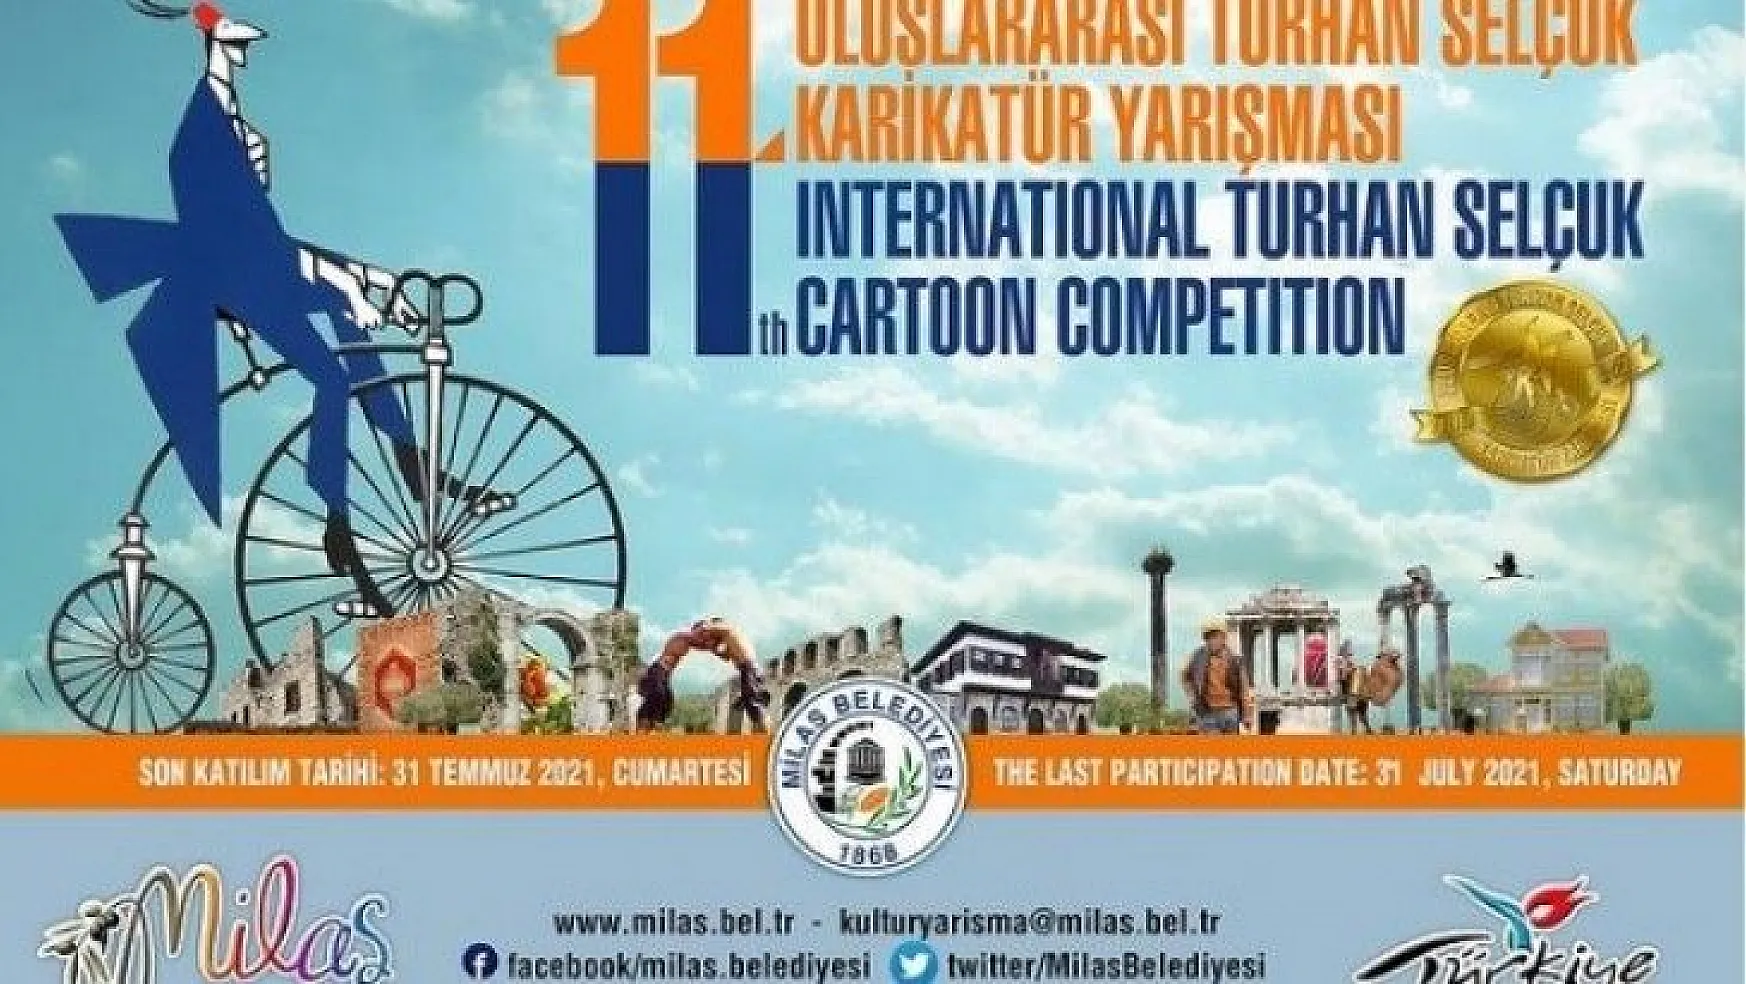 Turhan Selçuk karikatür yarışmasında son katılım tarihi uzatıldı